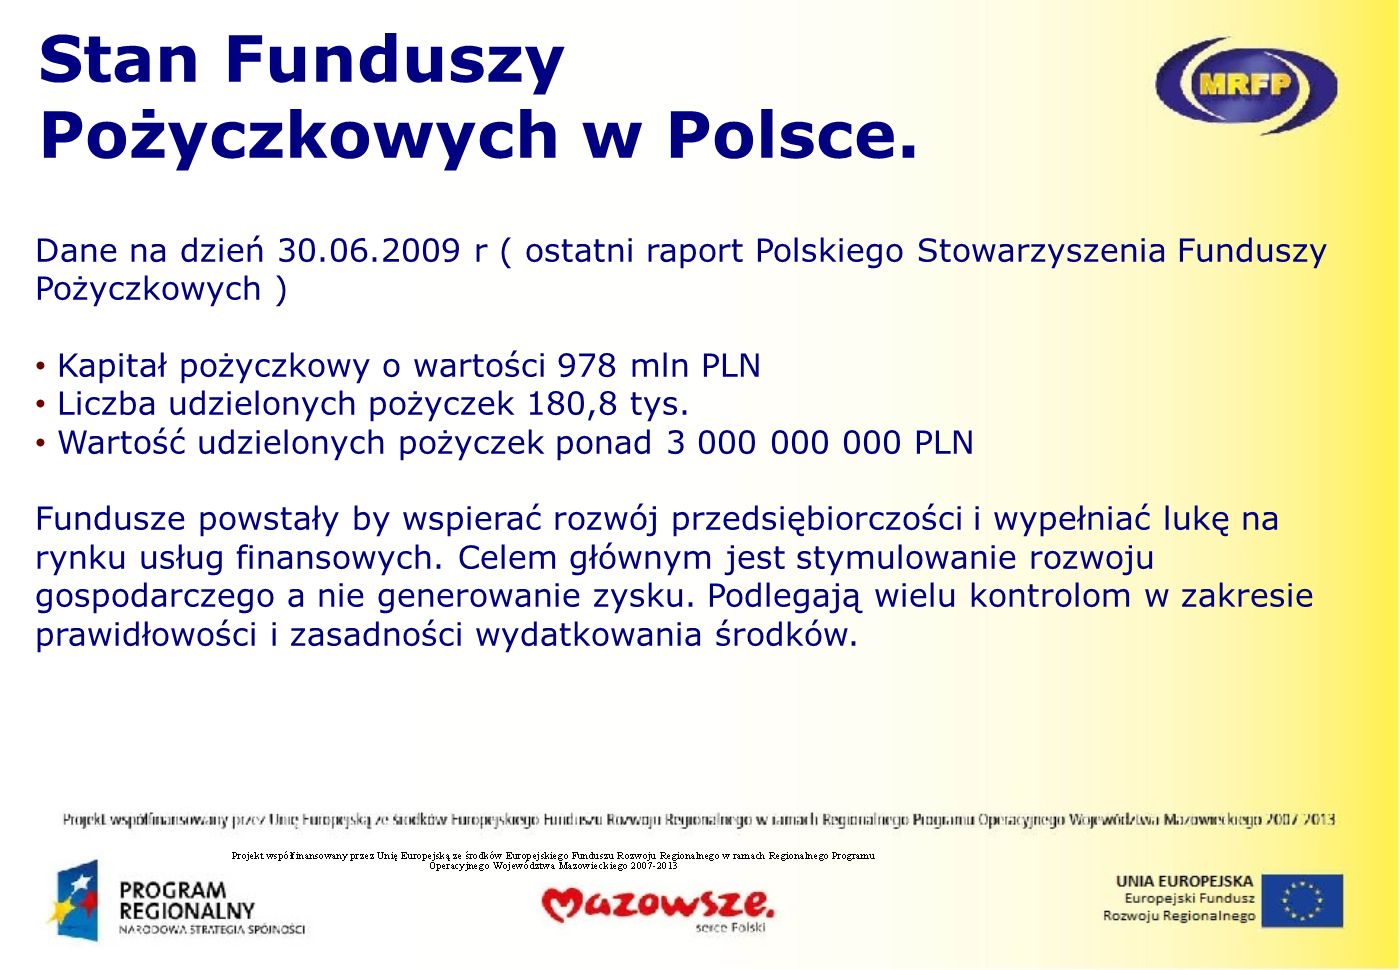 Stan Funduszy Pożyczkowych w Polsce.